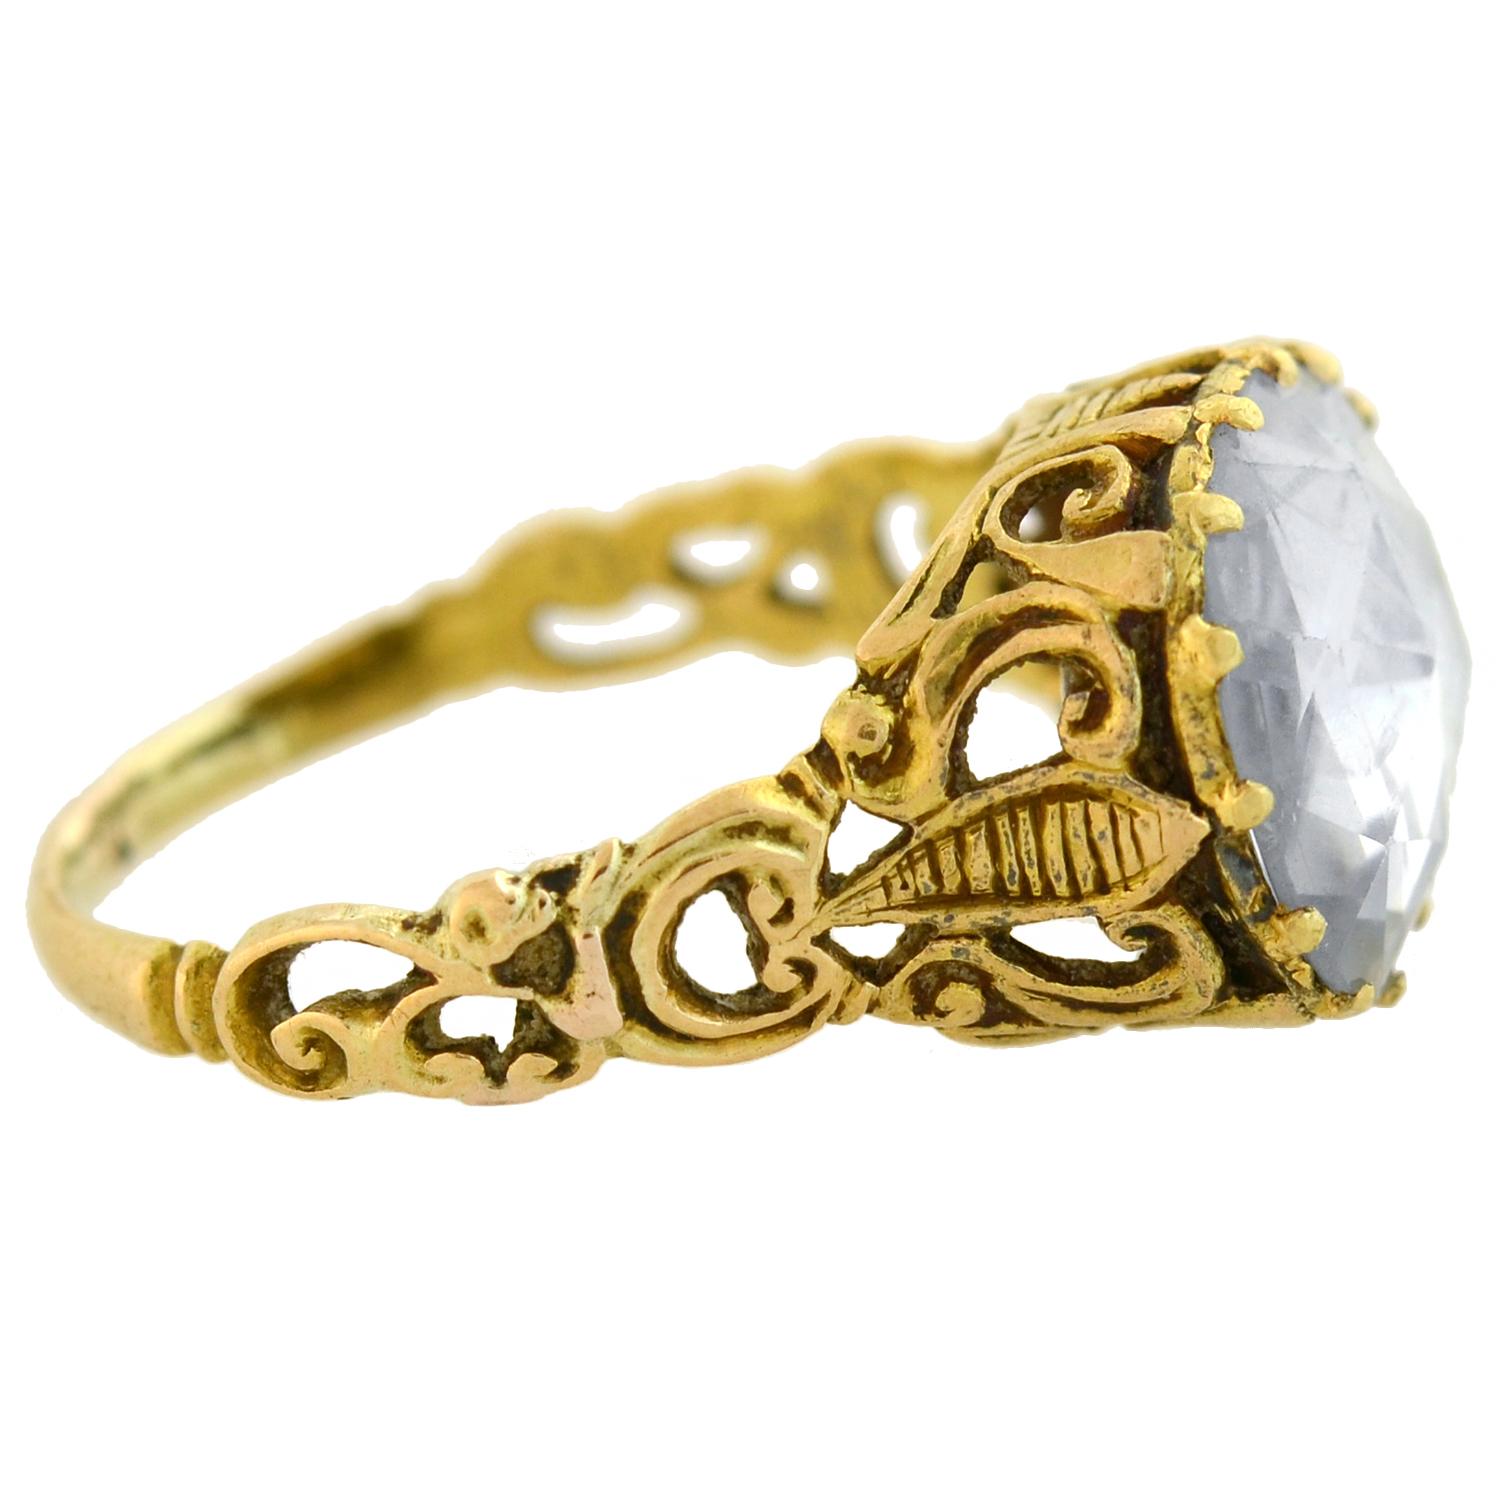 Ein atemberaubender Ring mit weißem Saphir aus der georgianischen Ära (ca. 1750)! Dieses wunderschöne Stück aus 14-karätigem Gelbgold schmückt einen unglaublichen 10-karätigen ovalen weißen Saphir in der Mitte einer femininen:: filigranen Fassung.